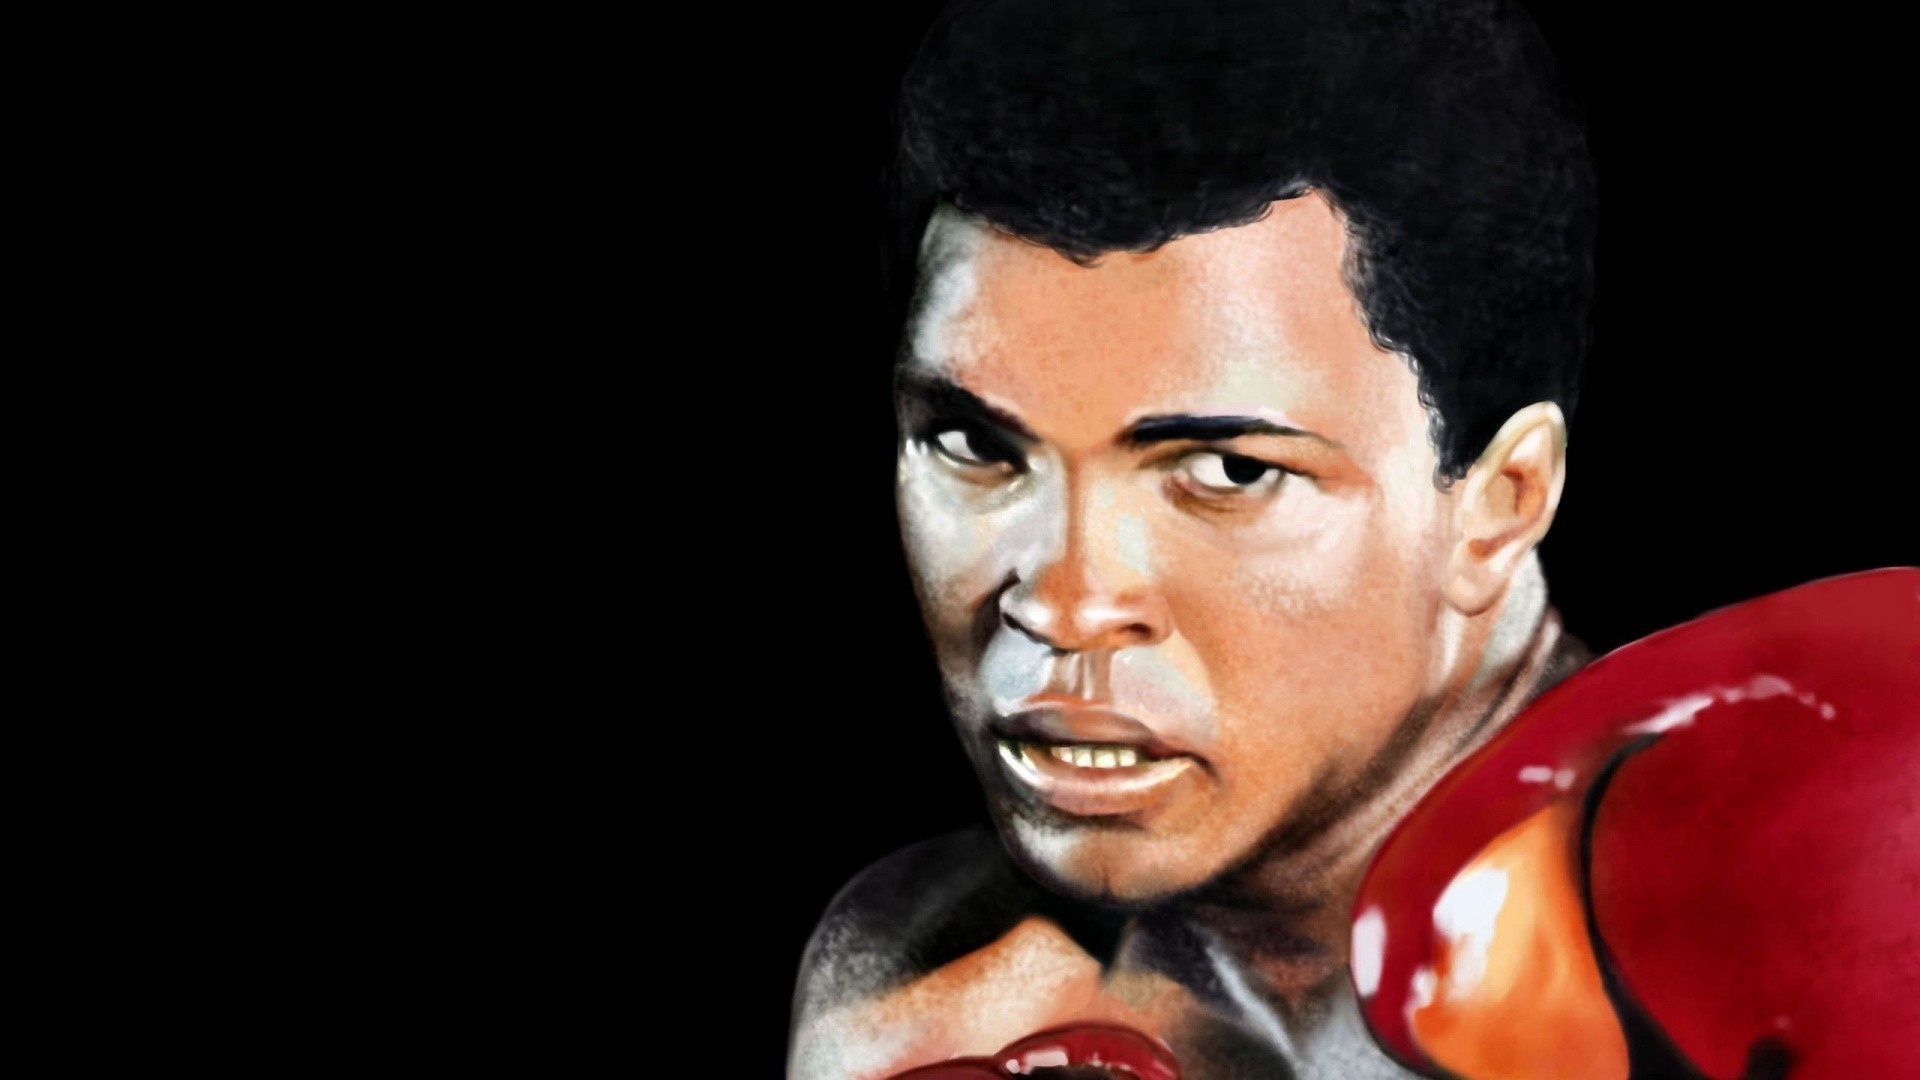 1920x1080 Muhammad Ali Wallpaper Free Download.